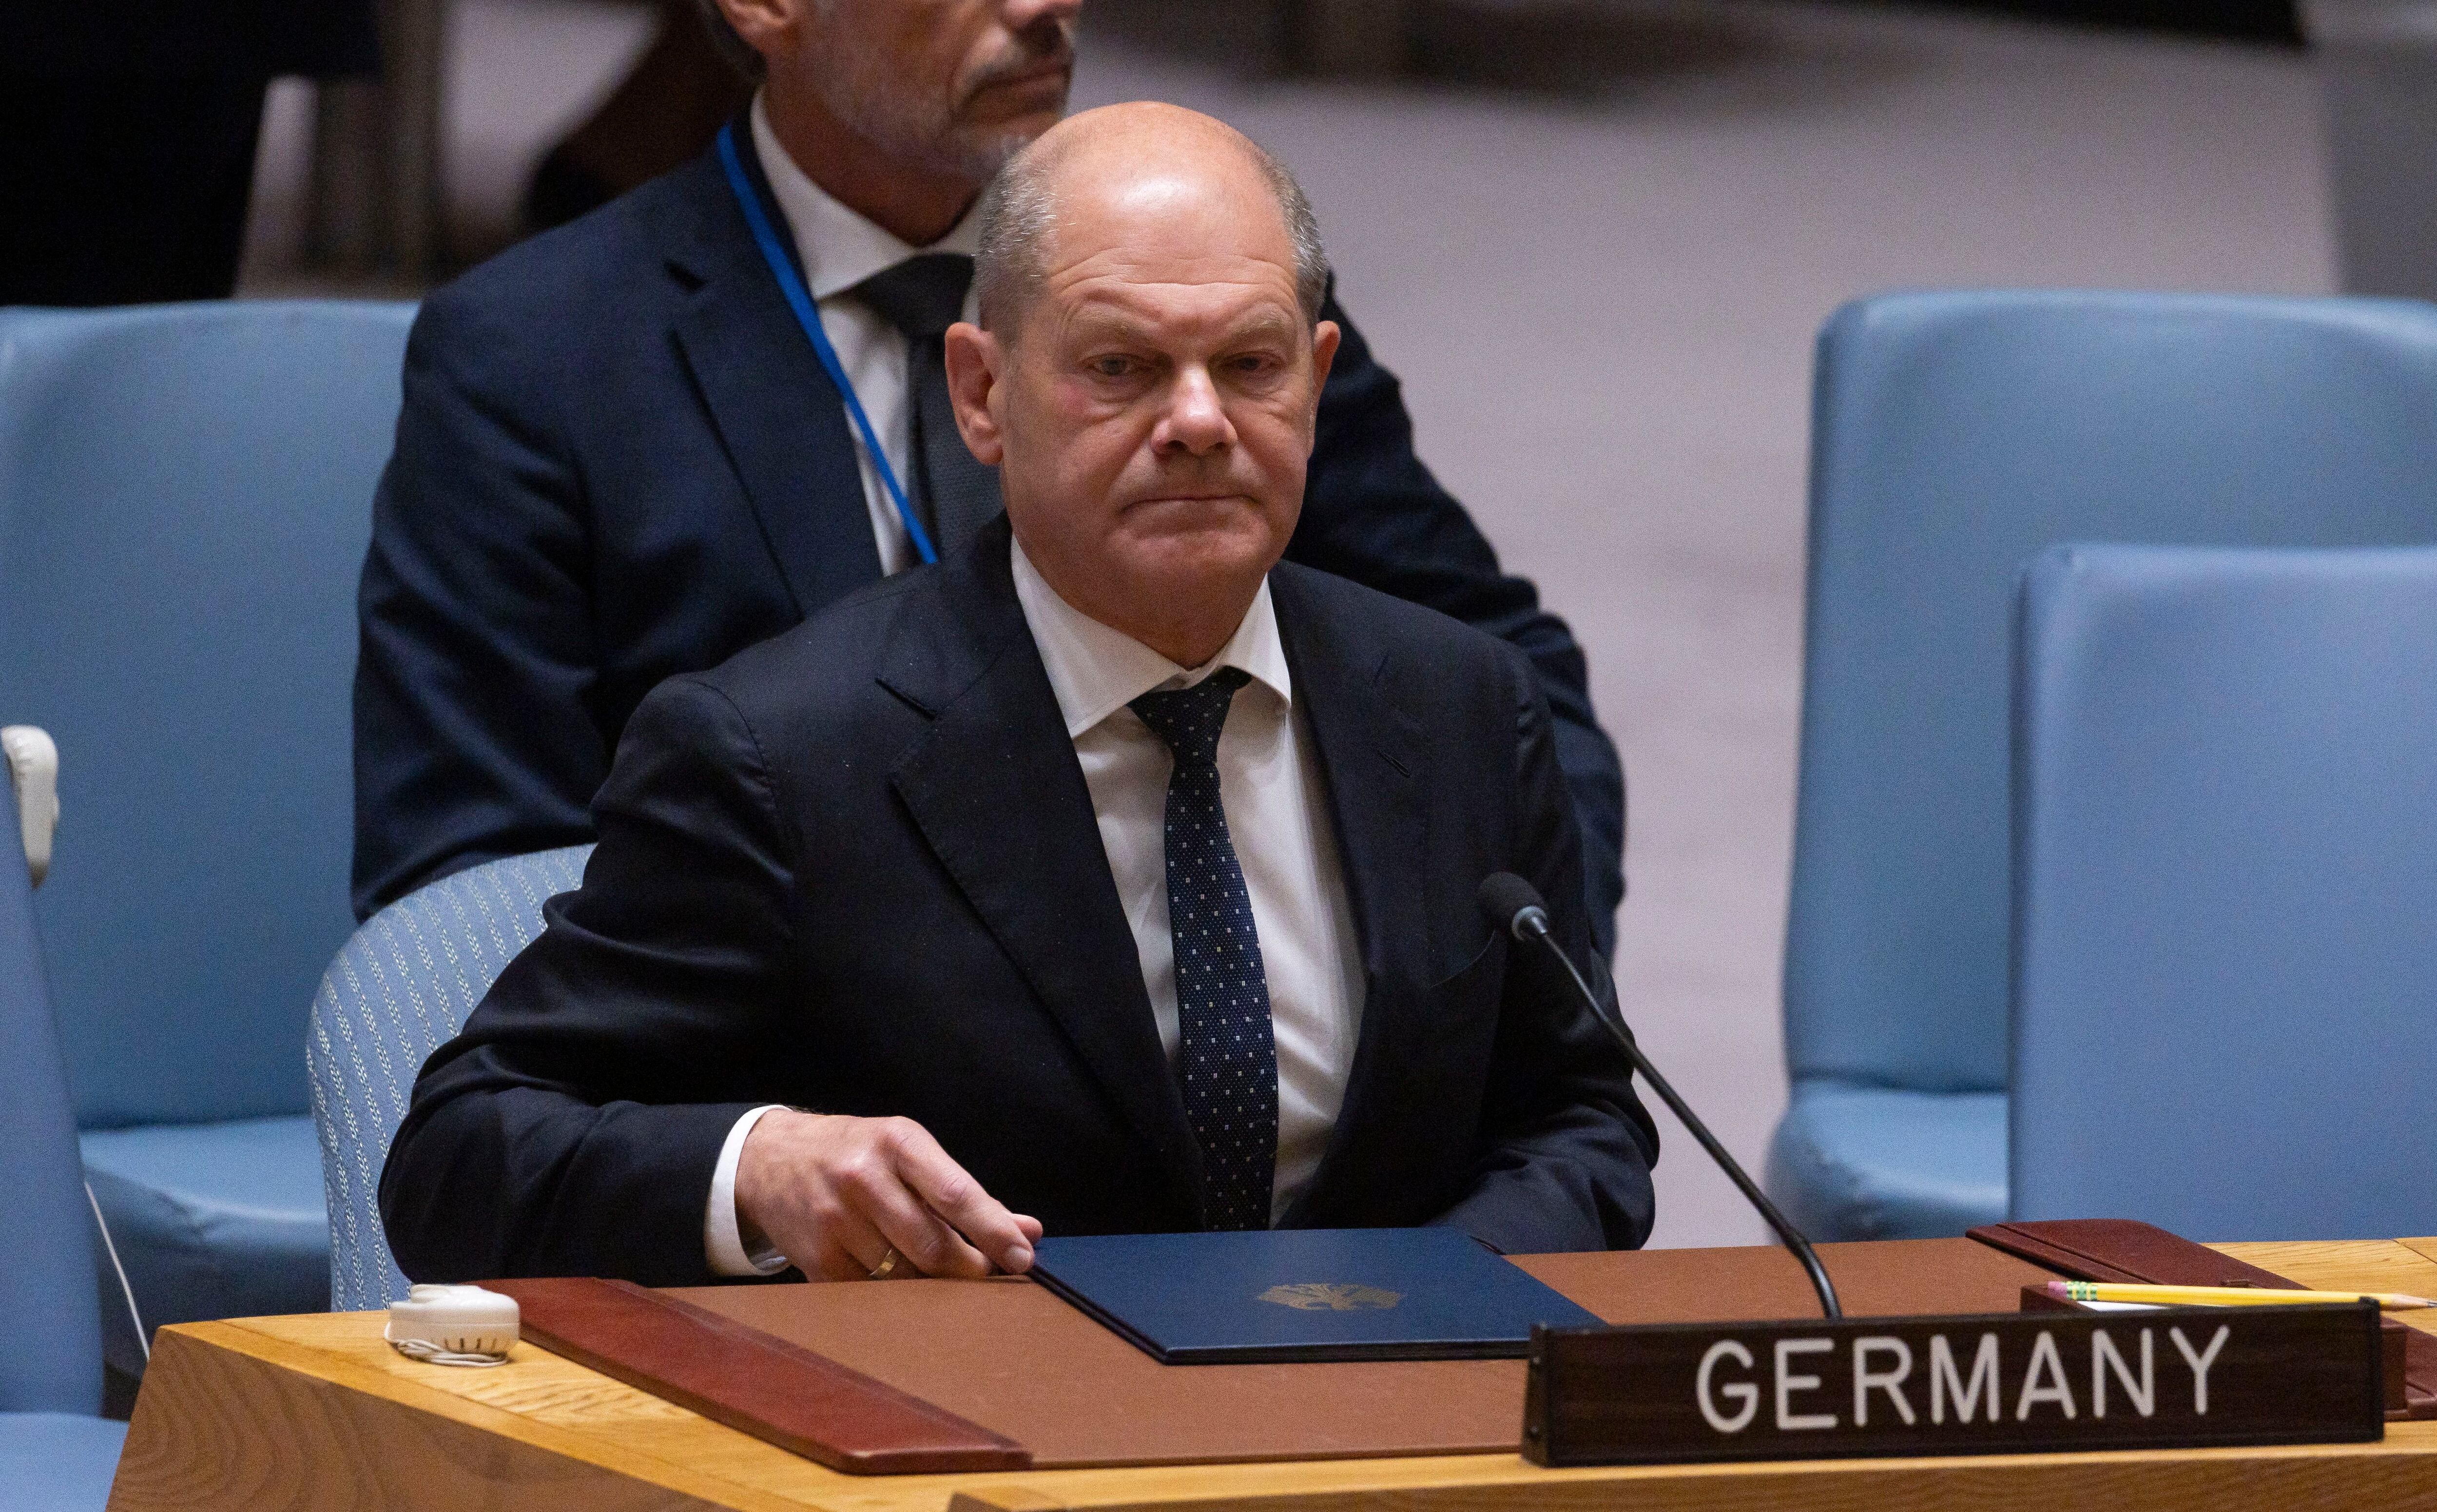 El canciller de Alemania, Olaf Scholz, habla durante una reunión del Consejo de Seguridad de las Naciones Unidas a la que asistió el presidente de Ucrania, Volodymyr Zelenski, sobre la guerra entre Ucrania y Rusia el pasado 20 de septiembre (EFE/EPA/JUSTIN LANE)